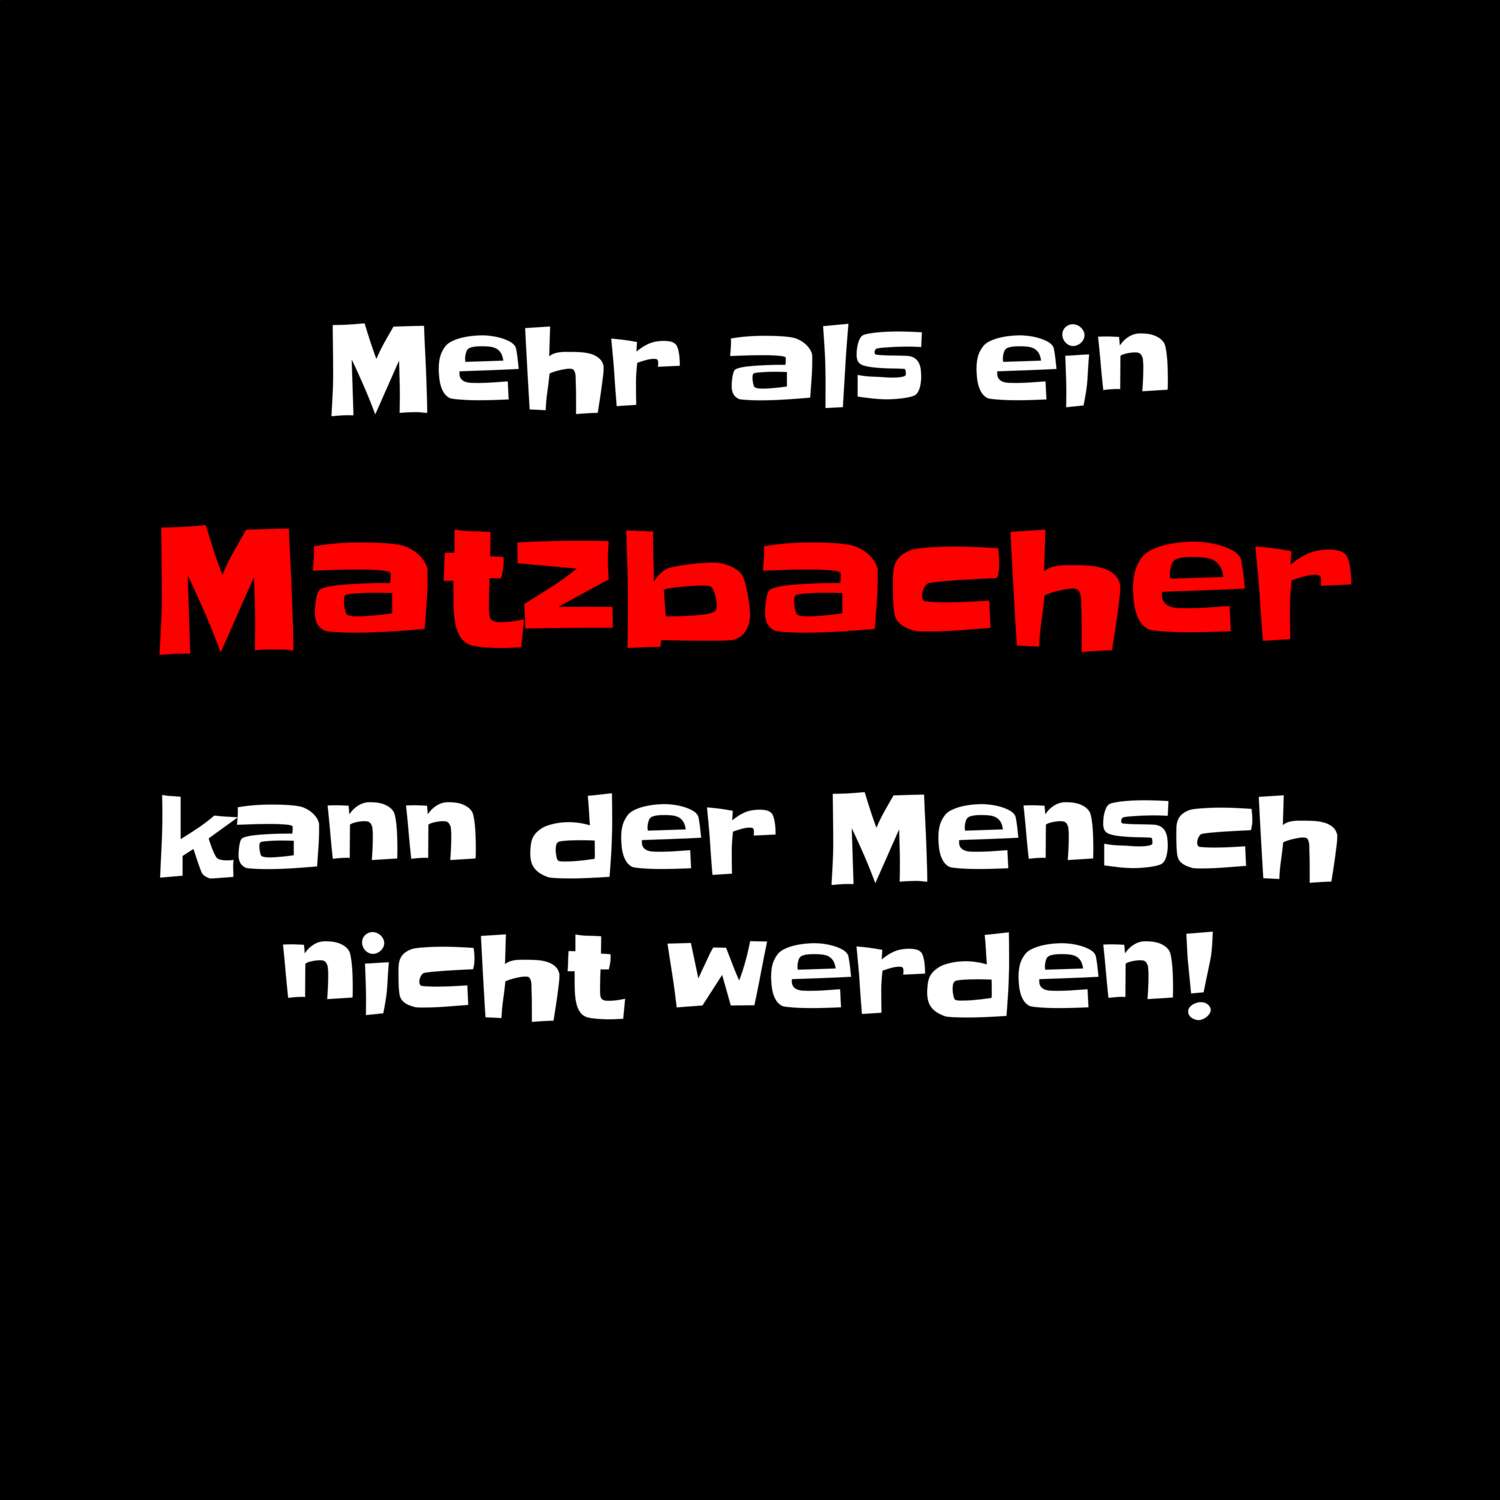 Matzbach T-Shirt »Mehr als ein«